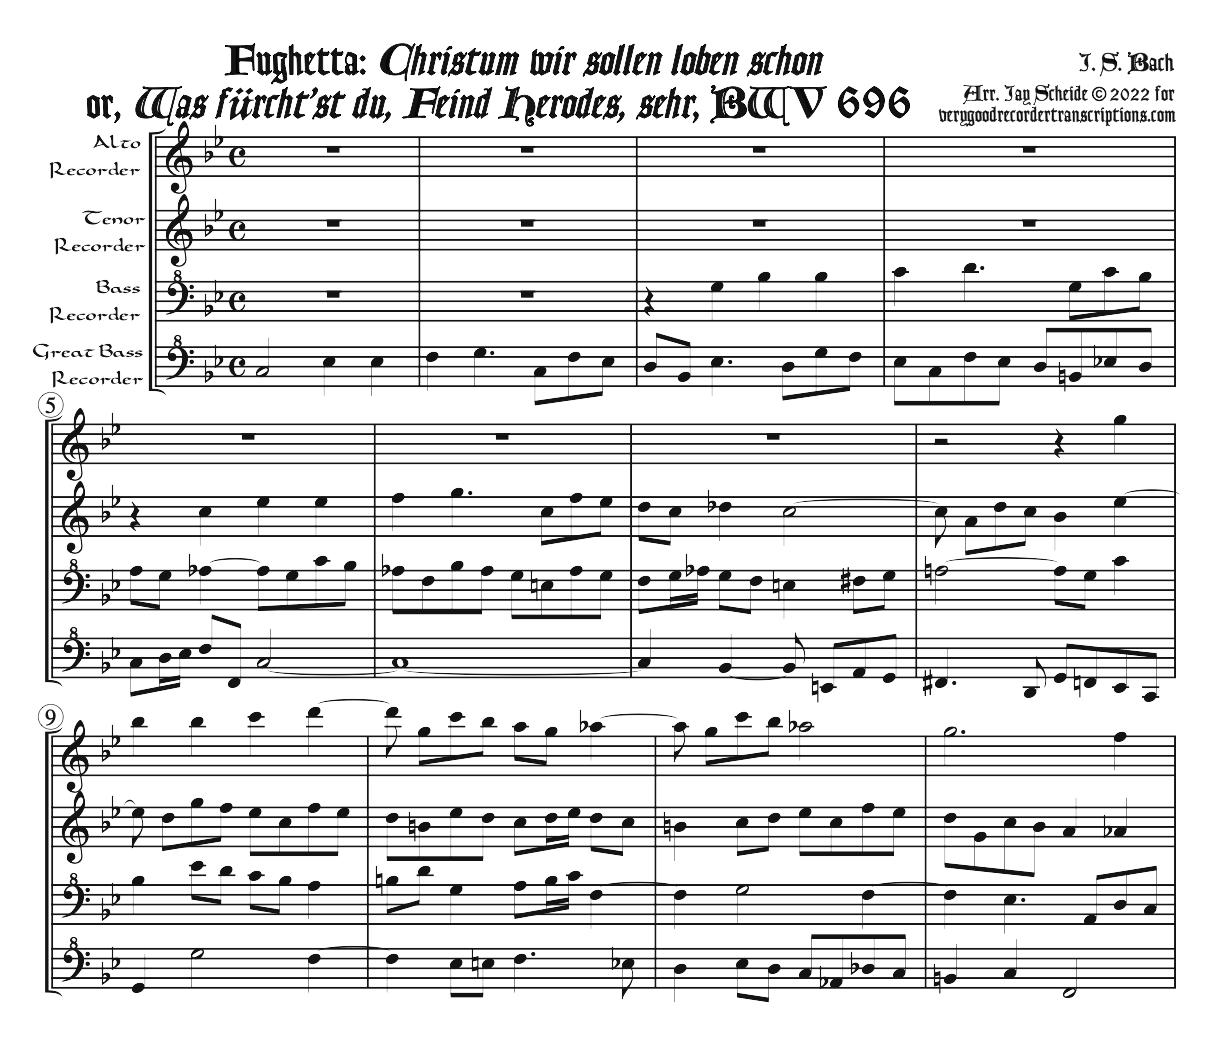 Fughetta: *Christum wir sollen loben schon*, BWV 696, arr. for recorder quartet